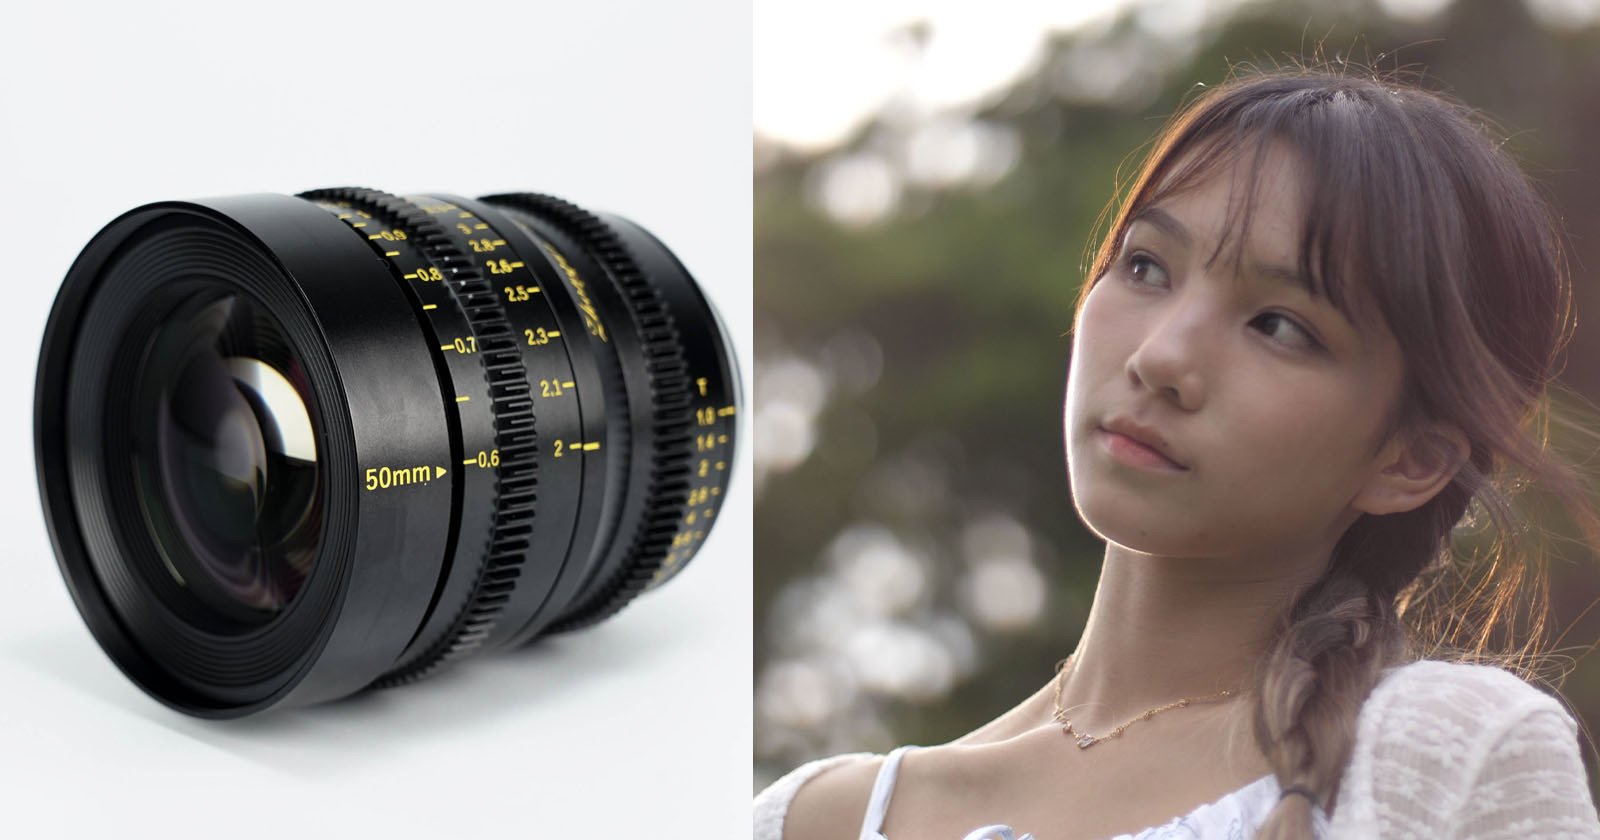  mitakon 50mm lens completes micro four thirds 